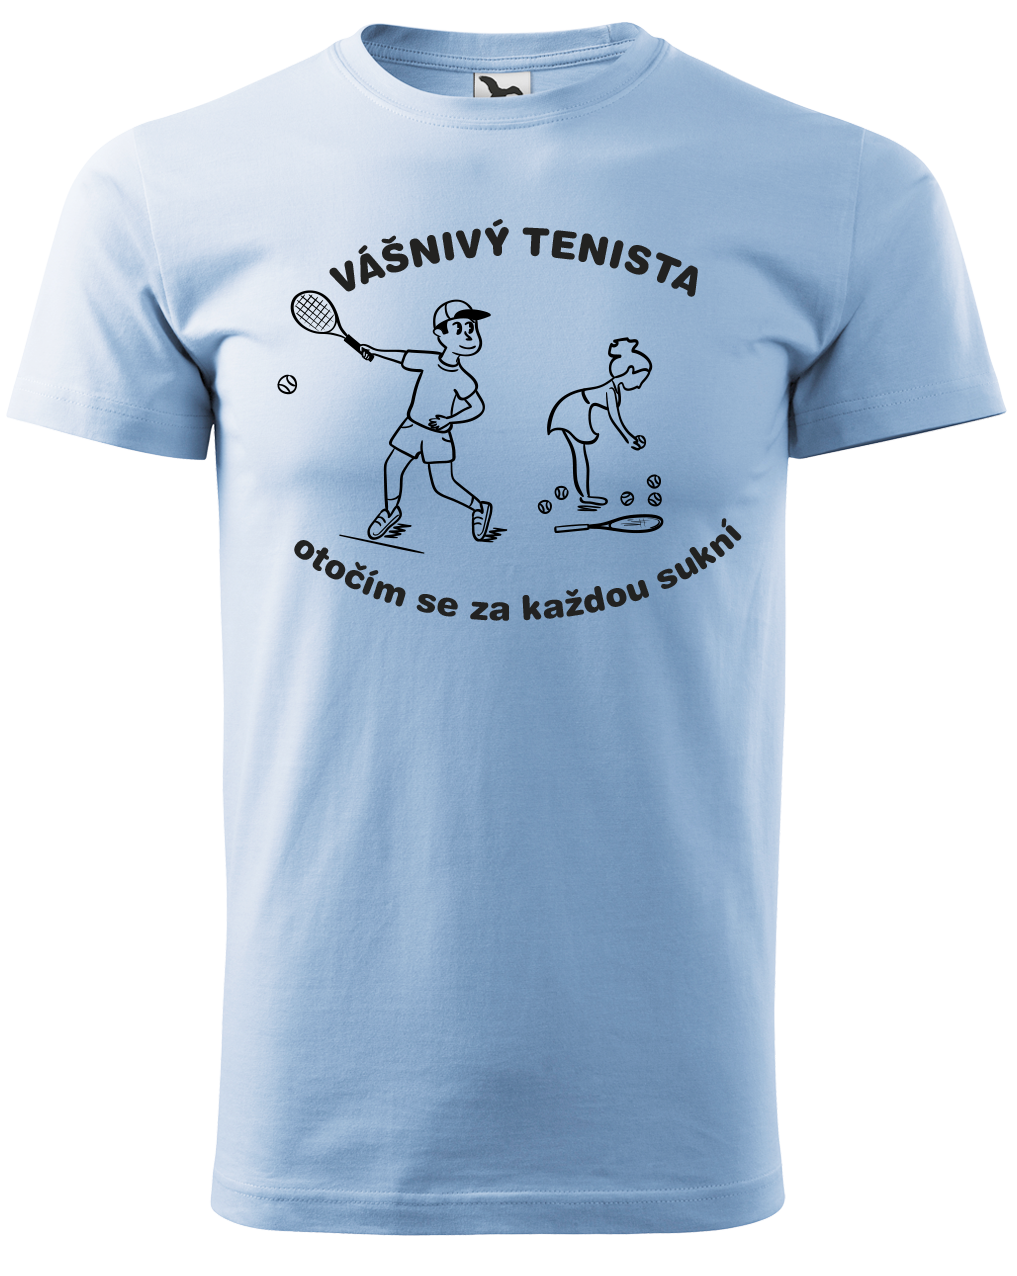 Vtipné tenisové tričko - Vášnivý tenista Velikost: XL, Barva: Nebesky modrá (15)